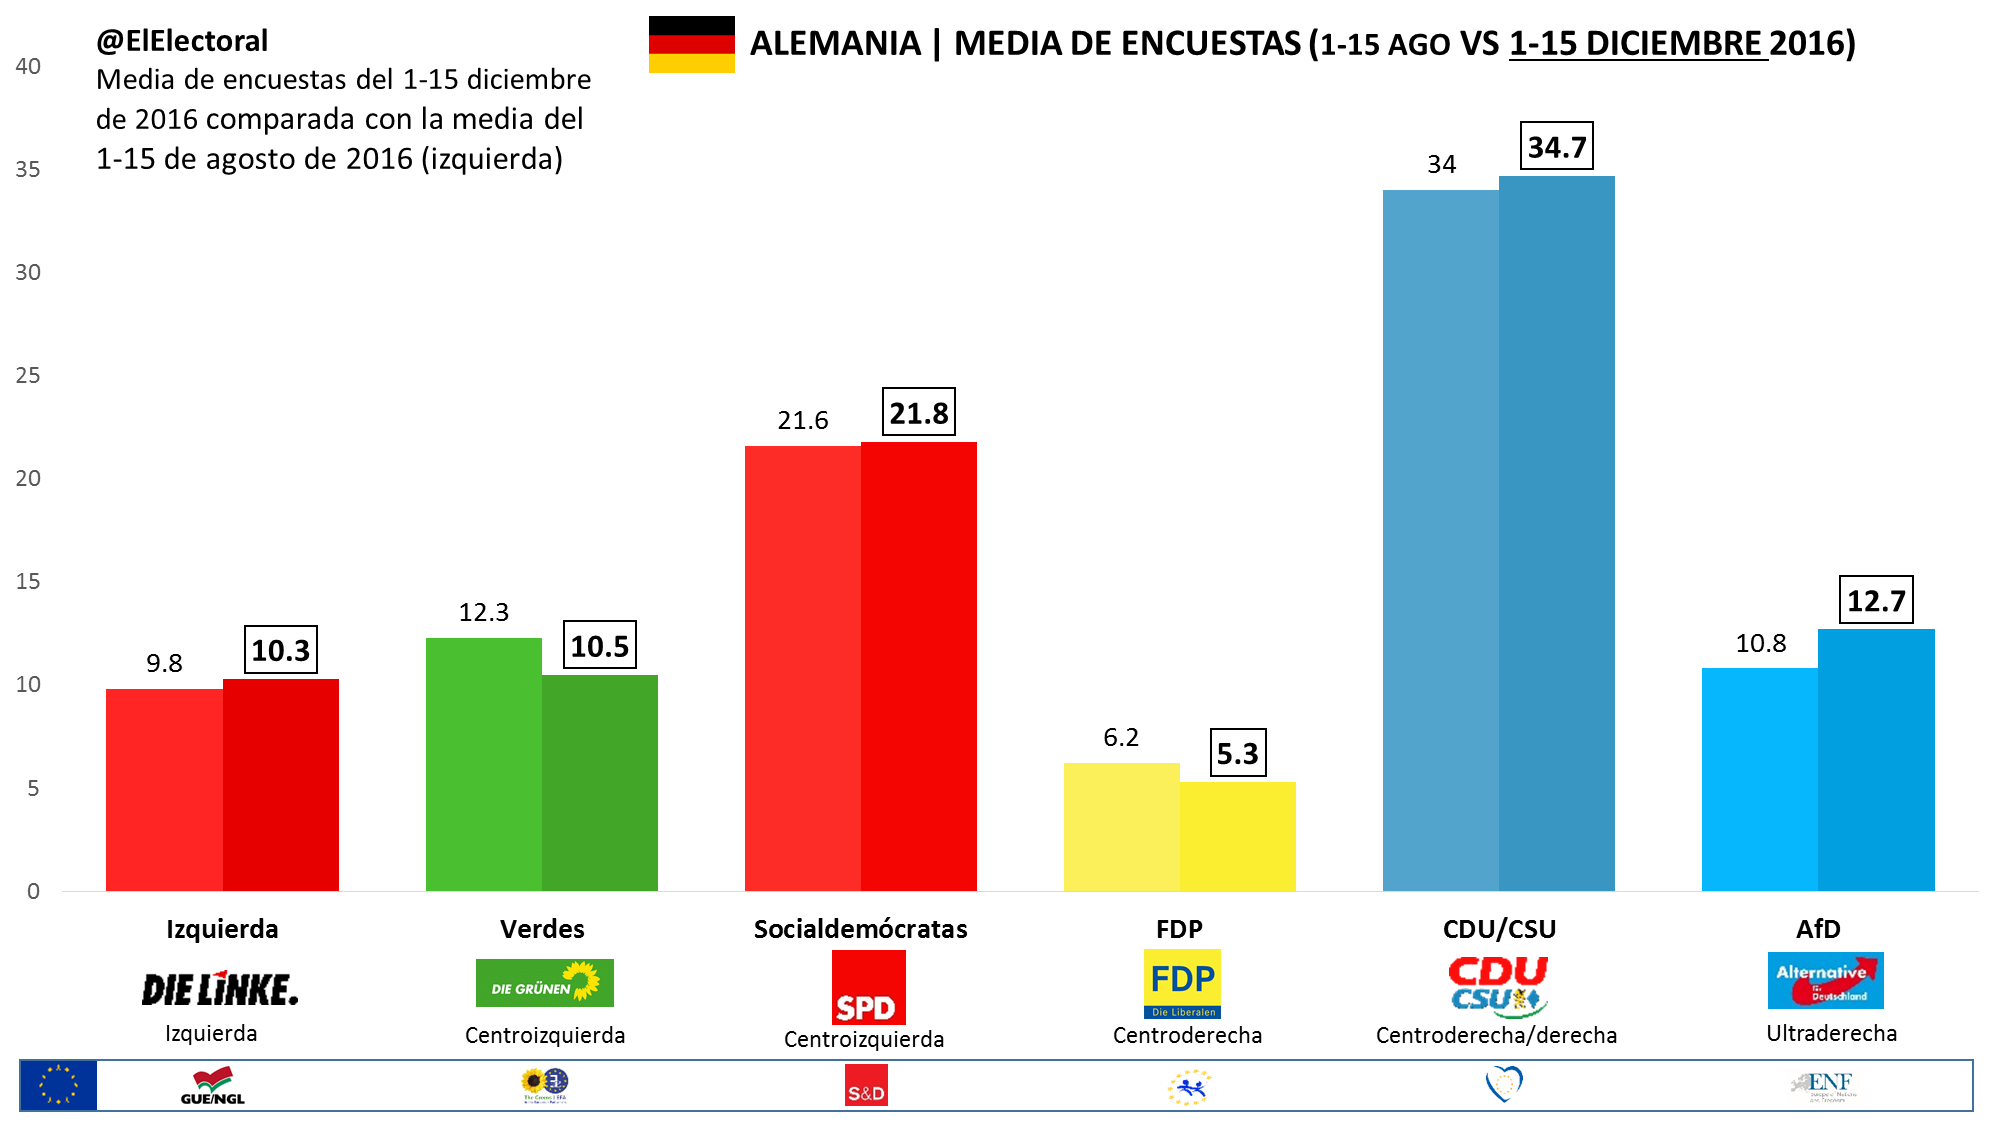 Media de encuestas Alemania 1-15 diciembre